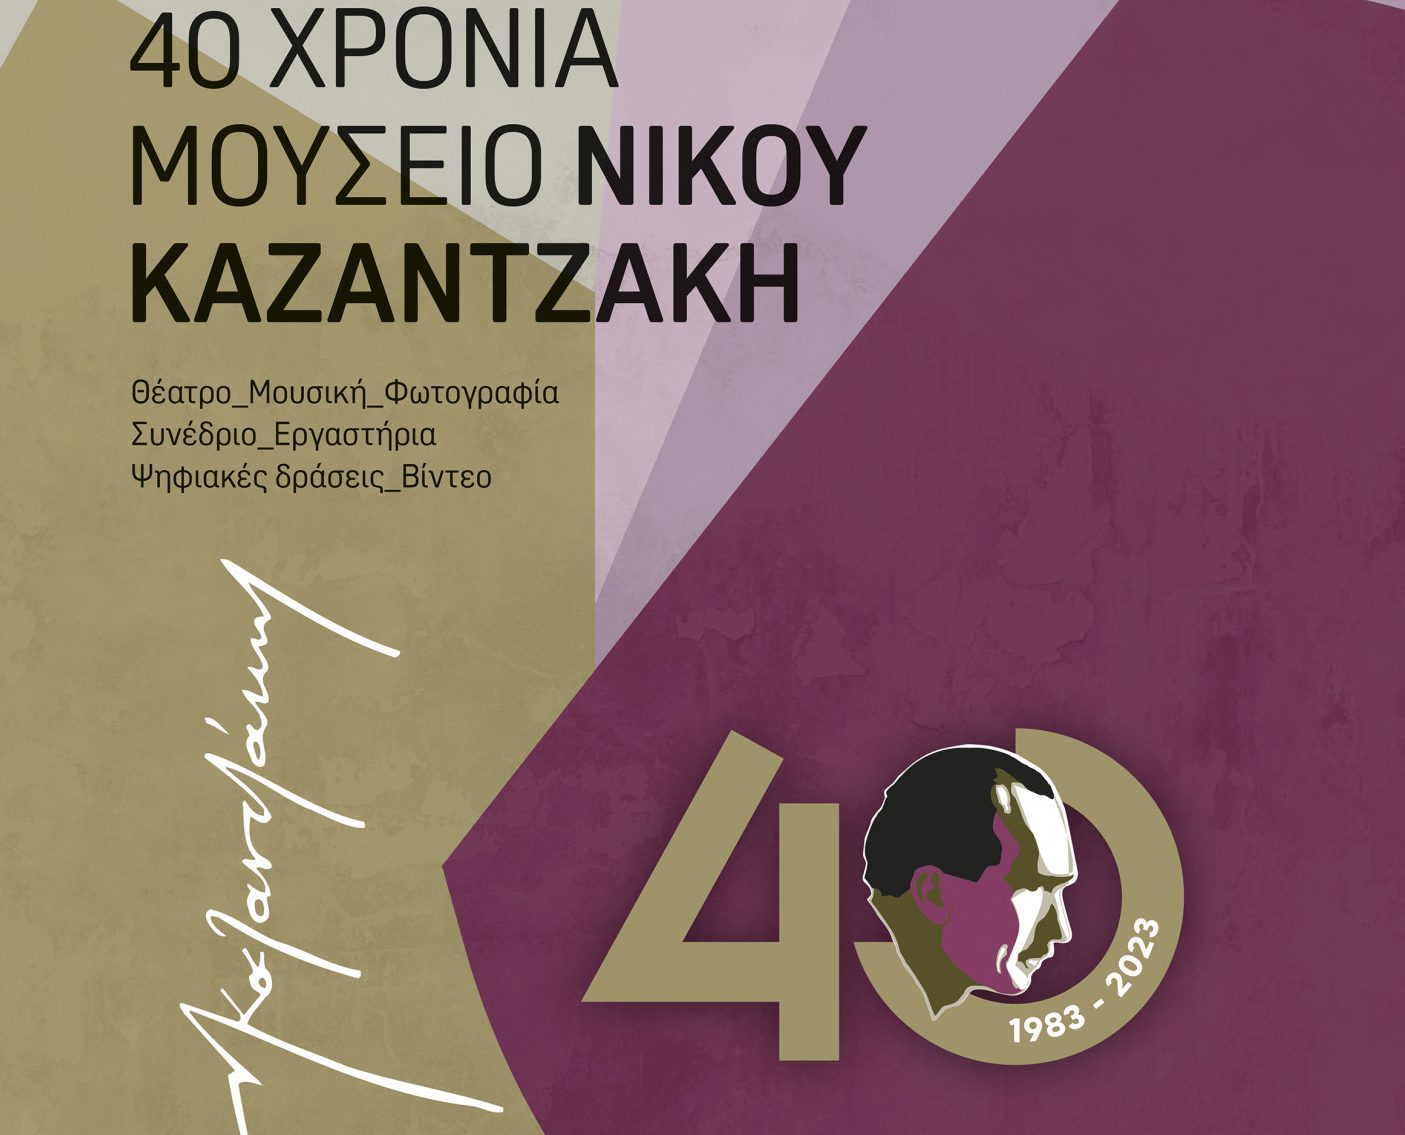 Το Μουσείο Νίκου Καζαντζάκη γιορτάζει 40 χρόνια λειτουργίας και το γιορτάζει - Όλο το πρόγραμμα εκδηλώσεων